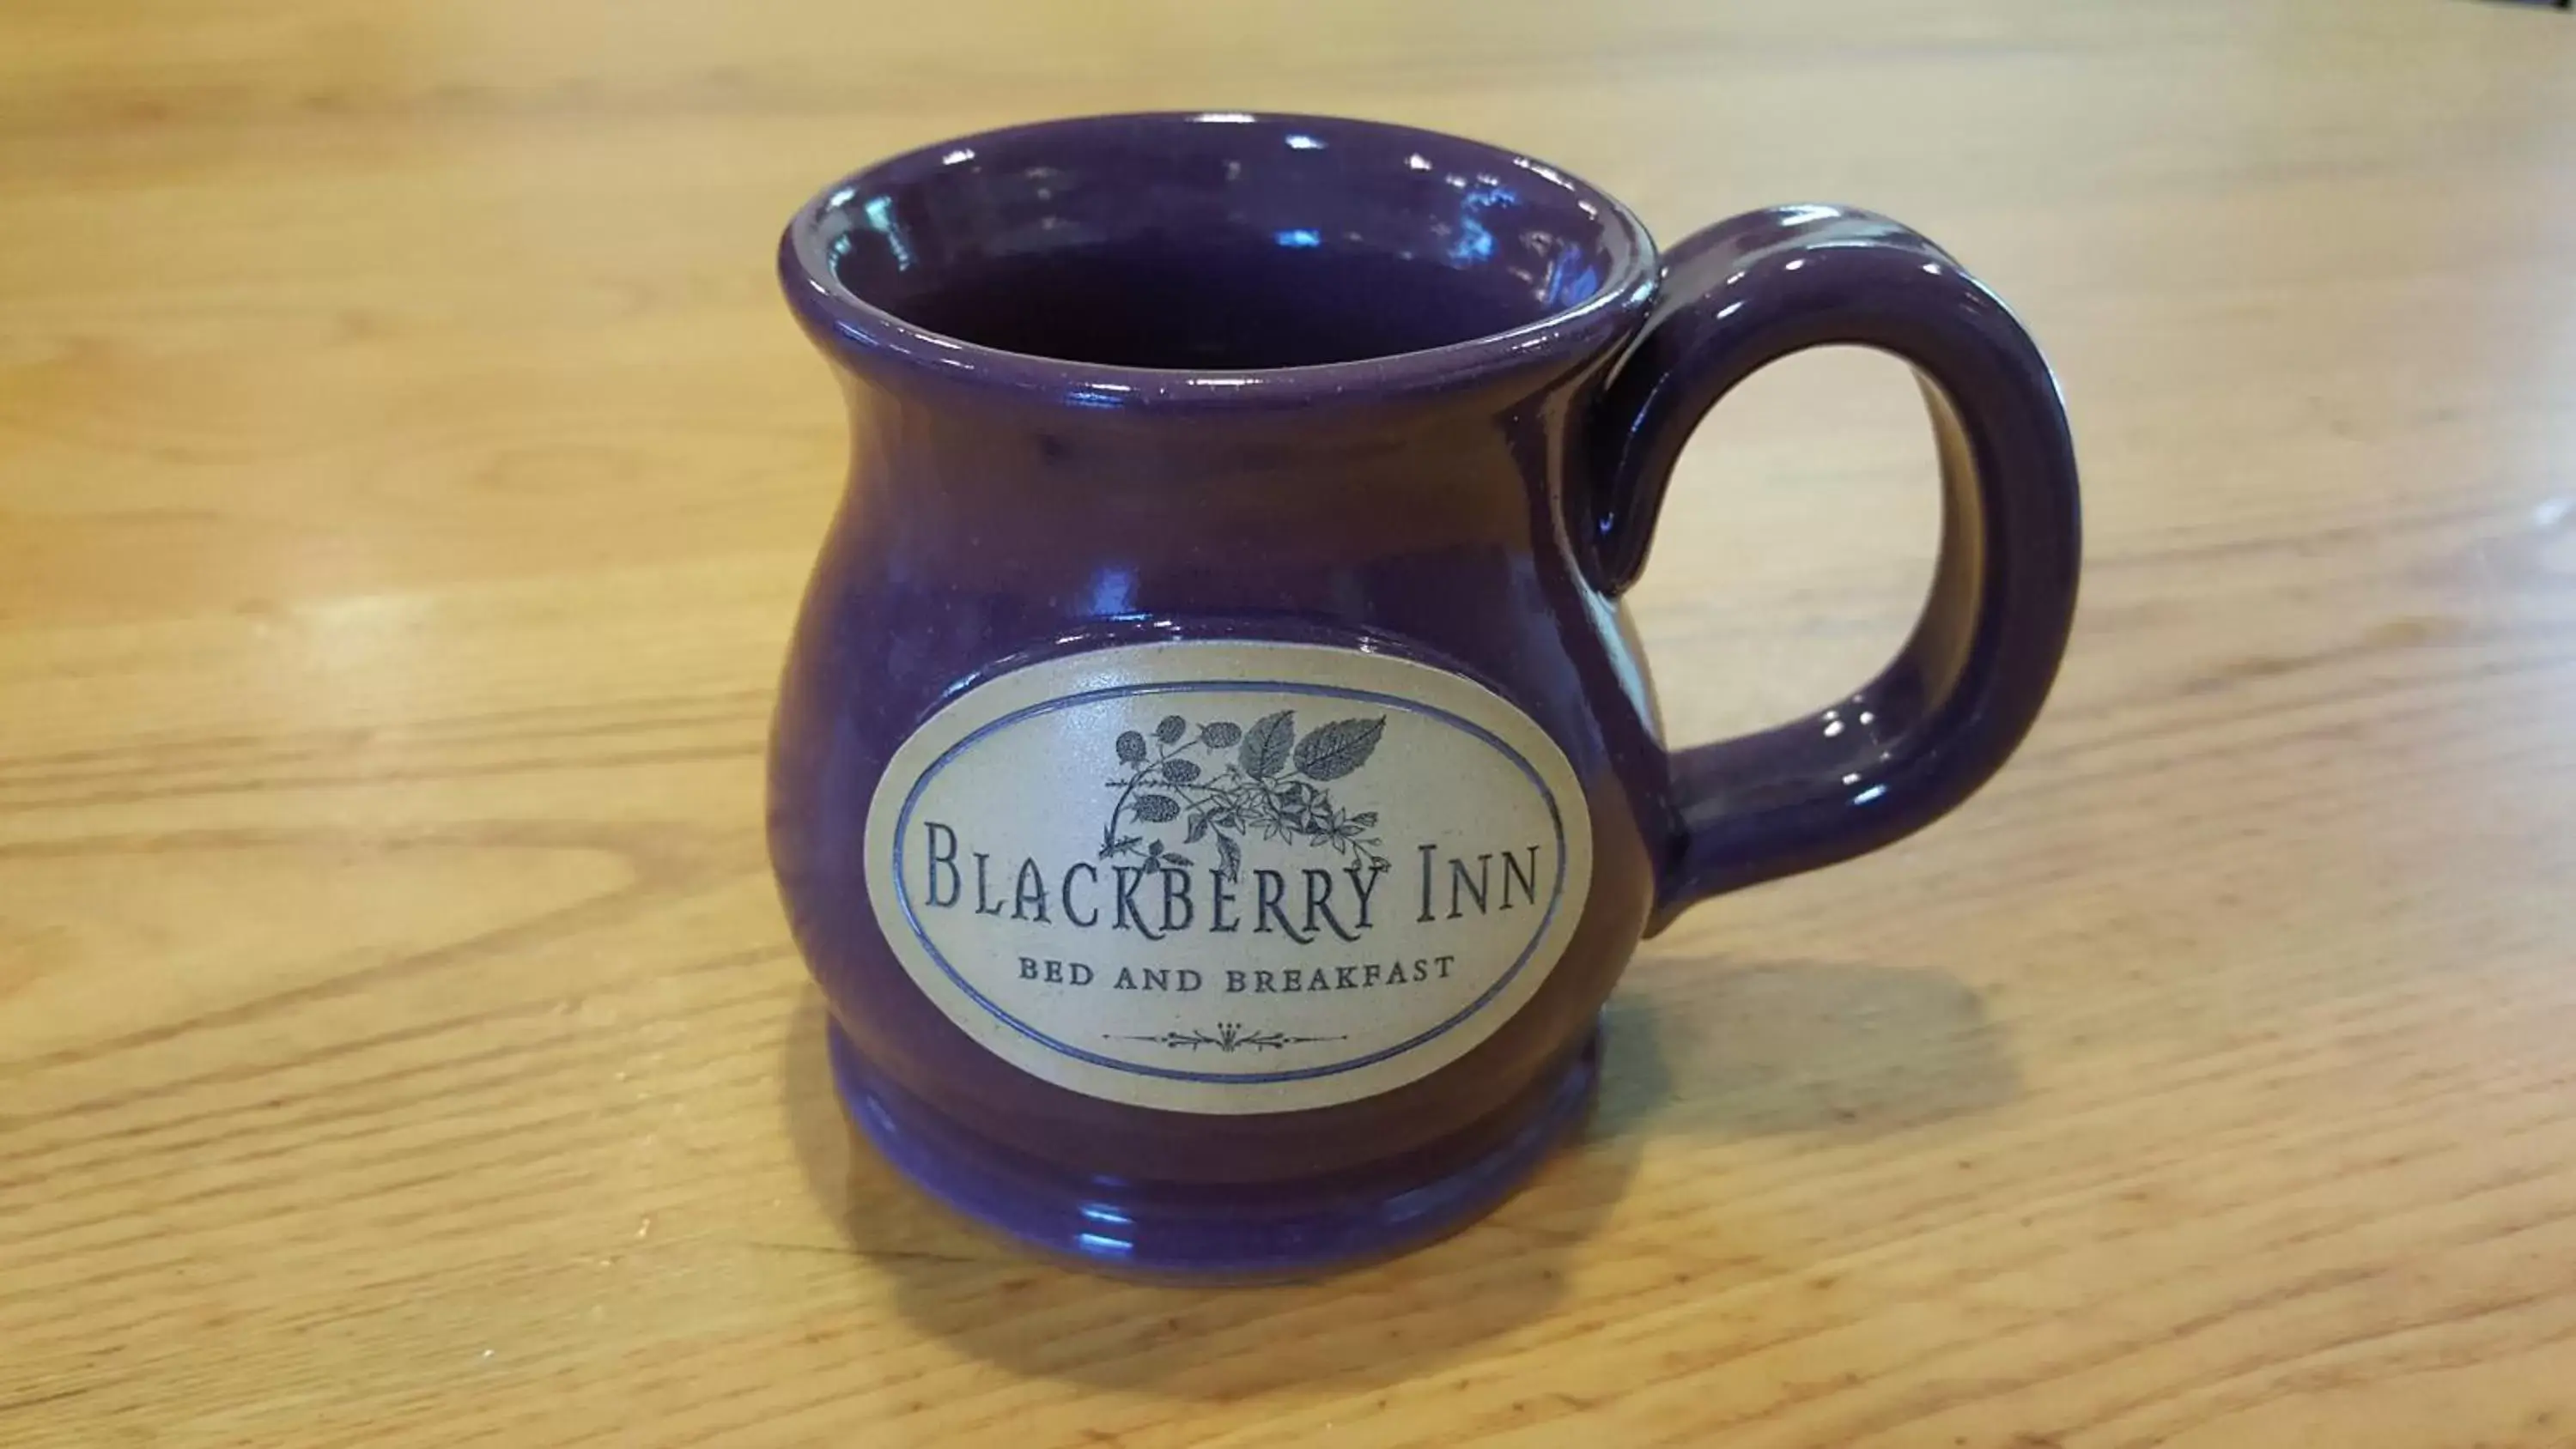 Blackberry Inn